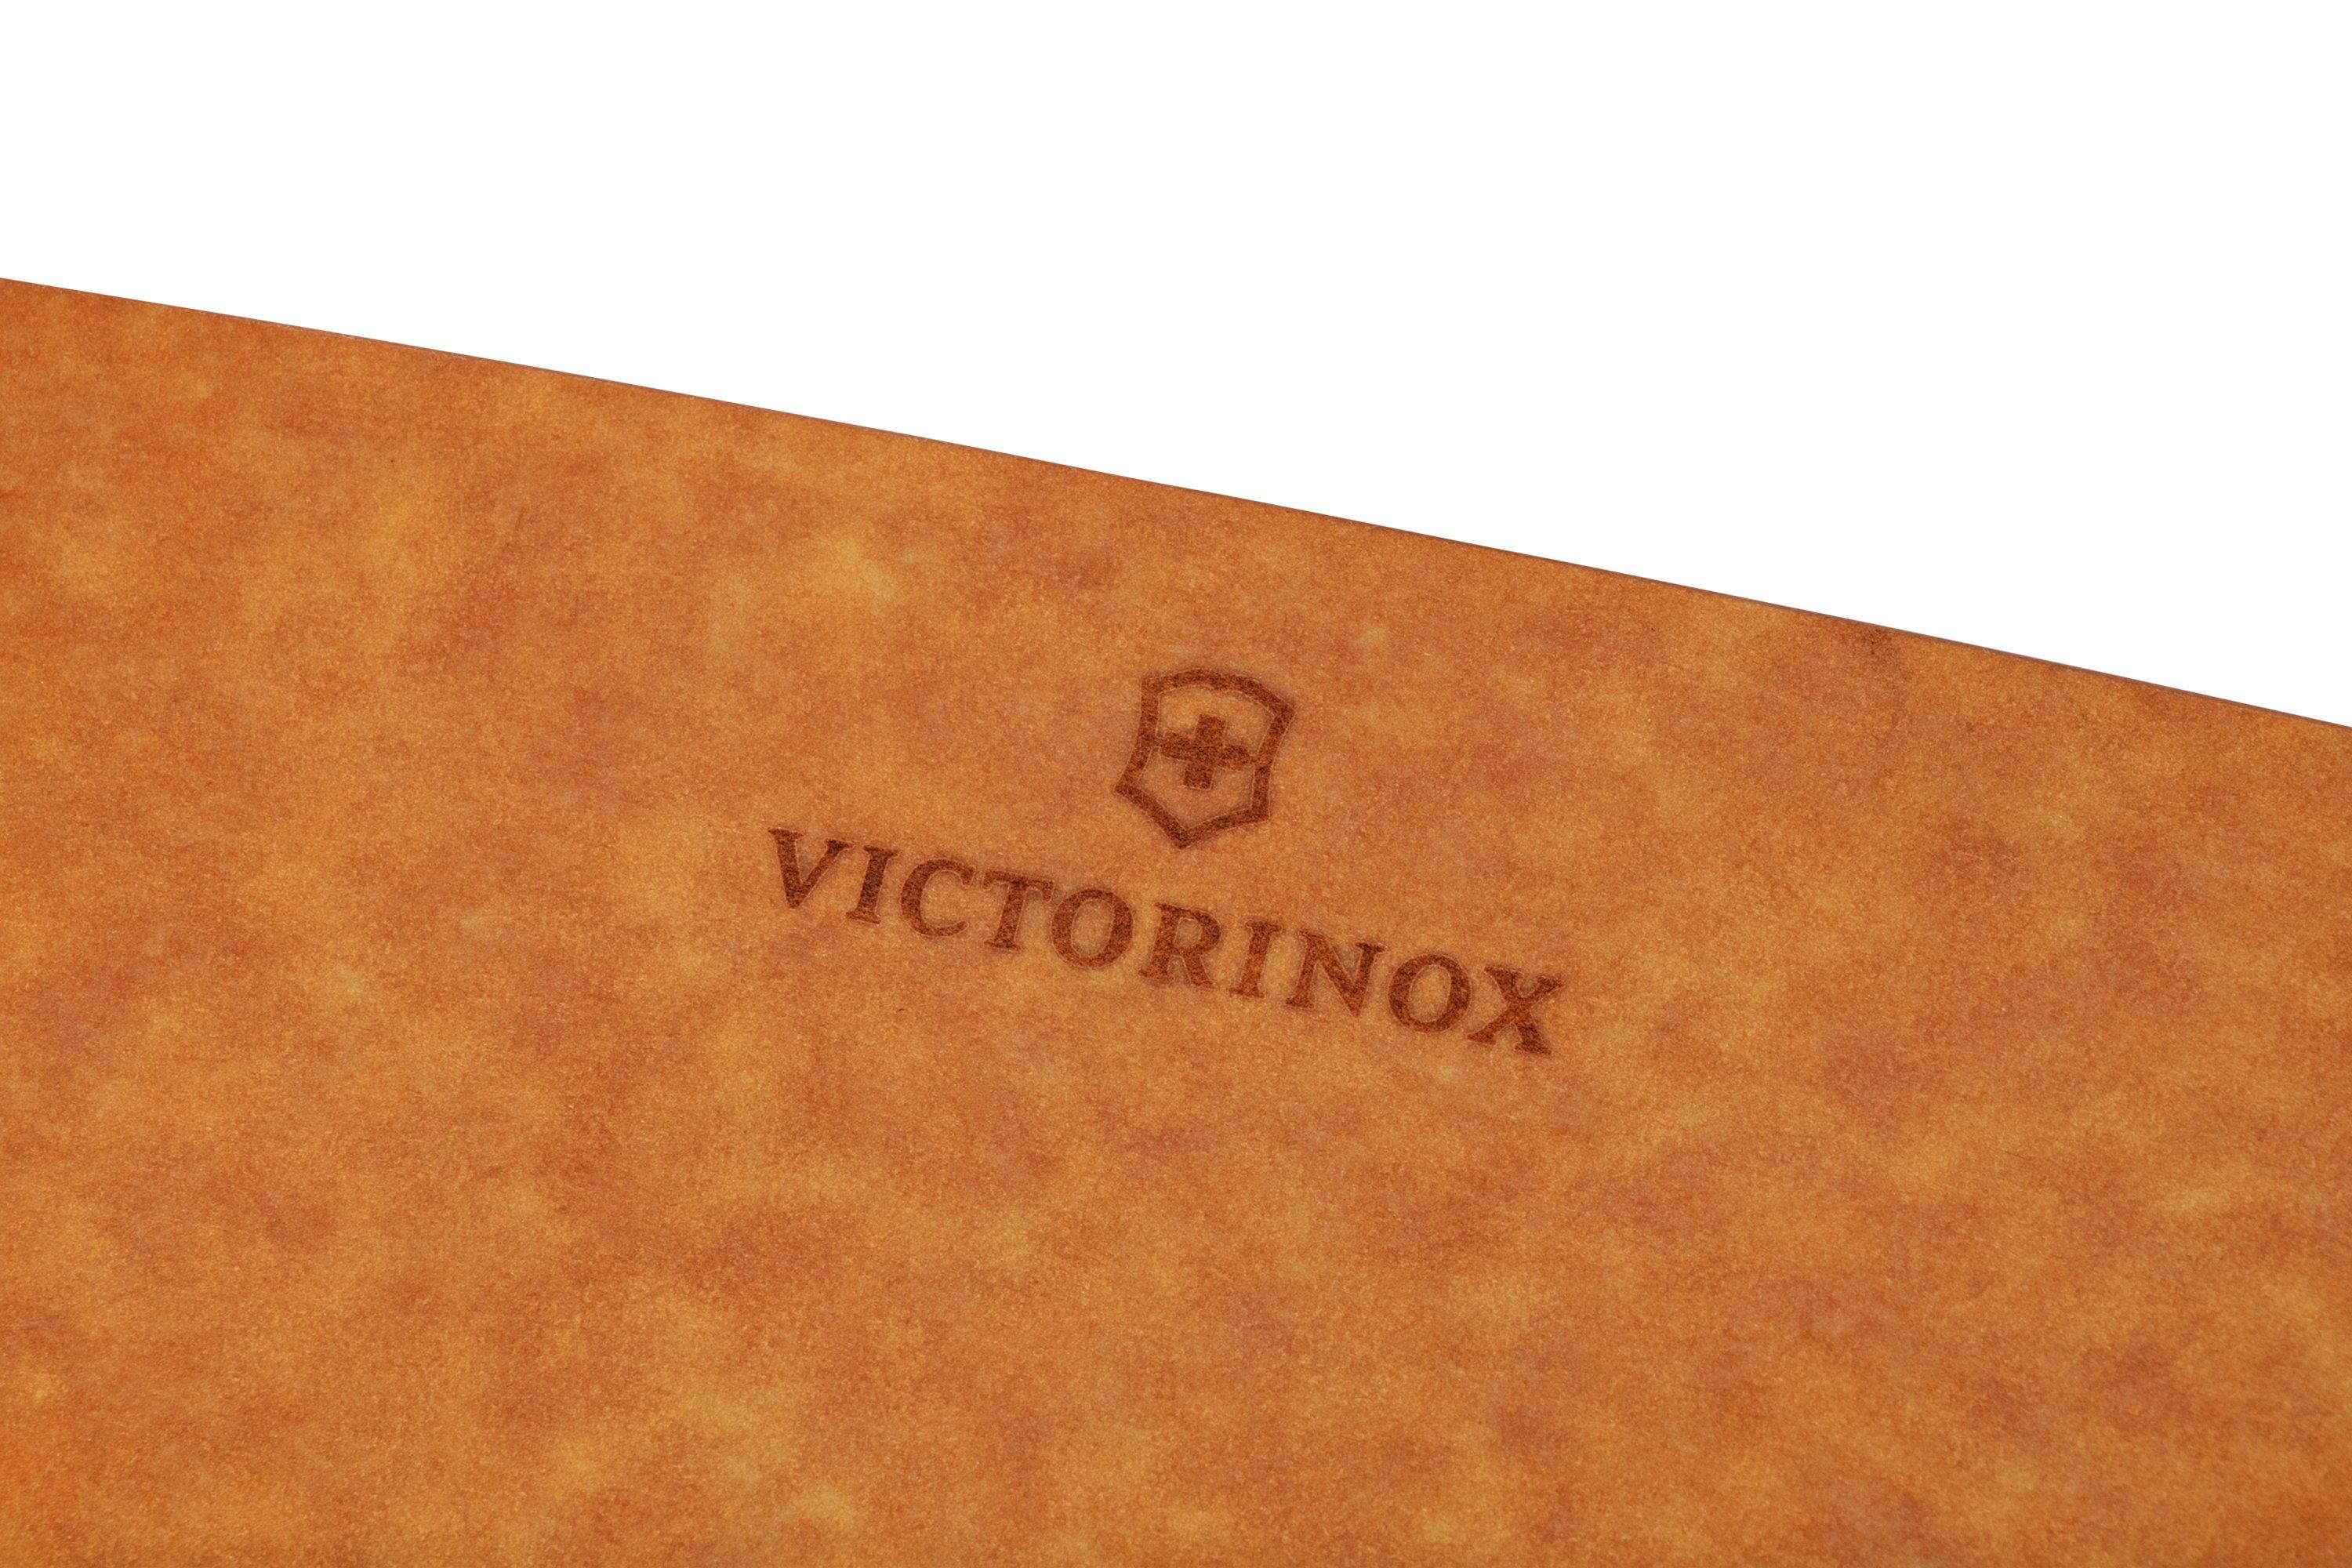 victorinox-kitchen-7-4123-schneidebrett-44-5-cm-x-33-cm-g-nstiger